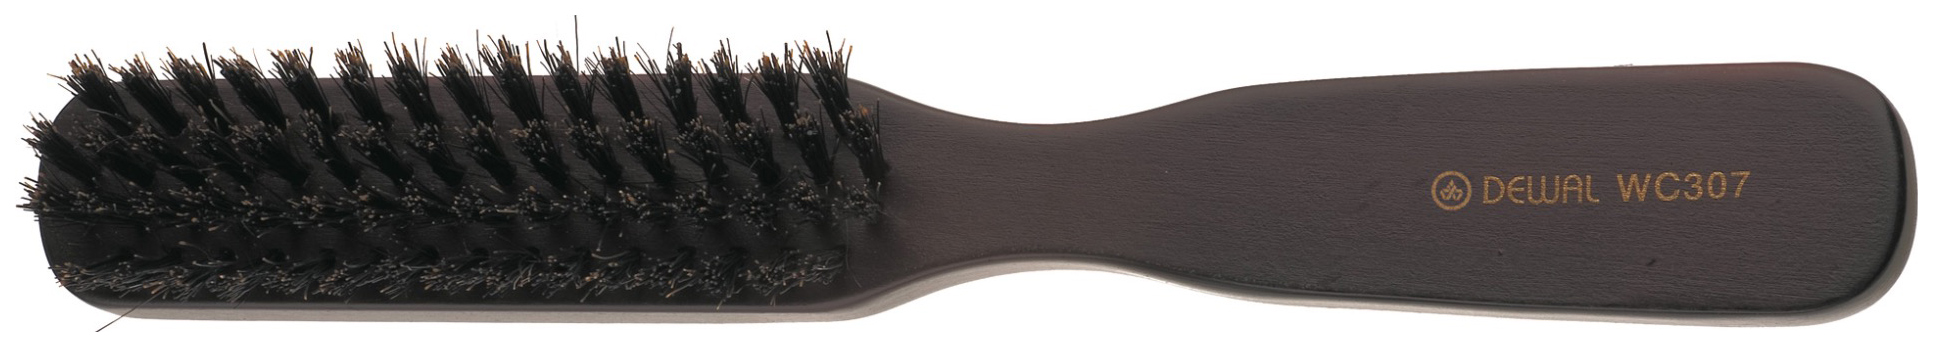 Расческа Dewal Деревянная натуральная щетина 4-х рядная BR-WC307 lei щетка для обуви деревянная натуральная щетина кабан